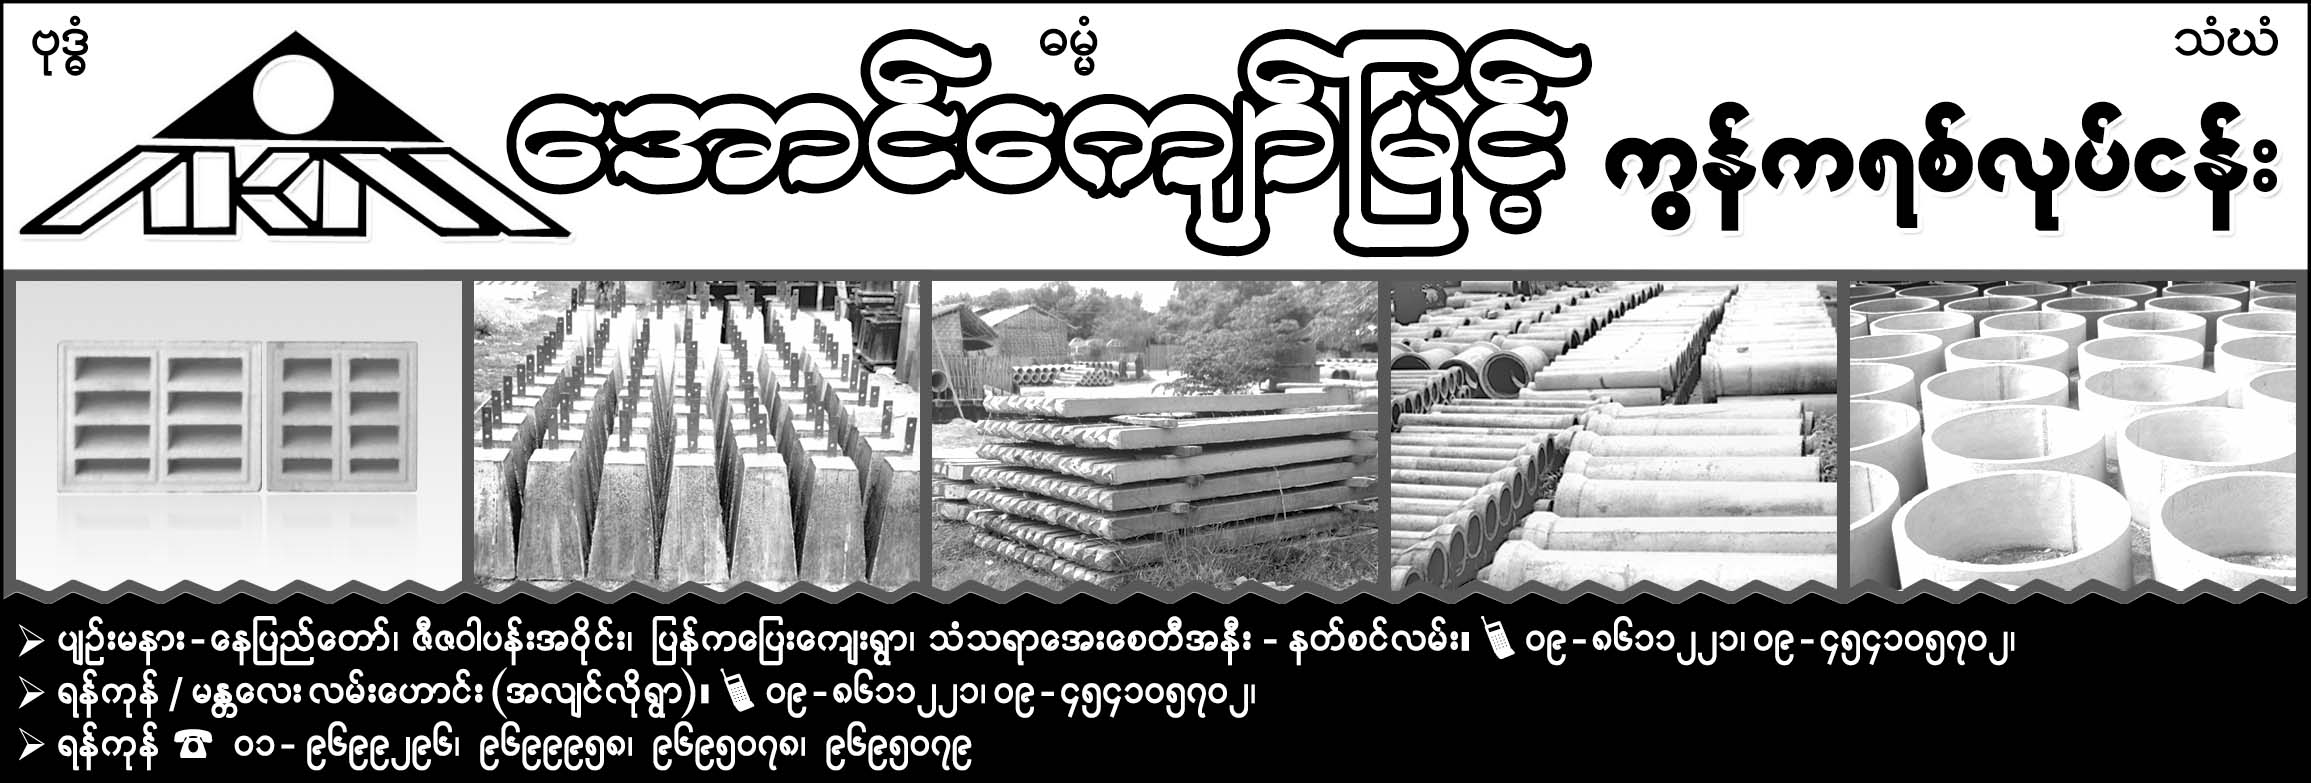 Aung Kyaw Myint